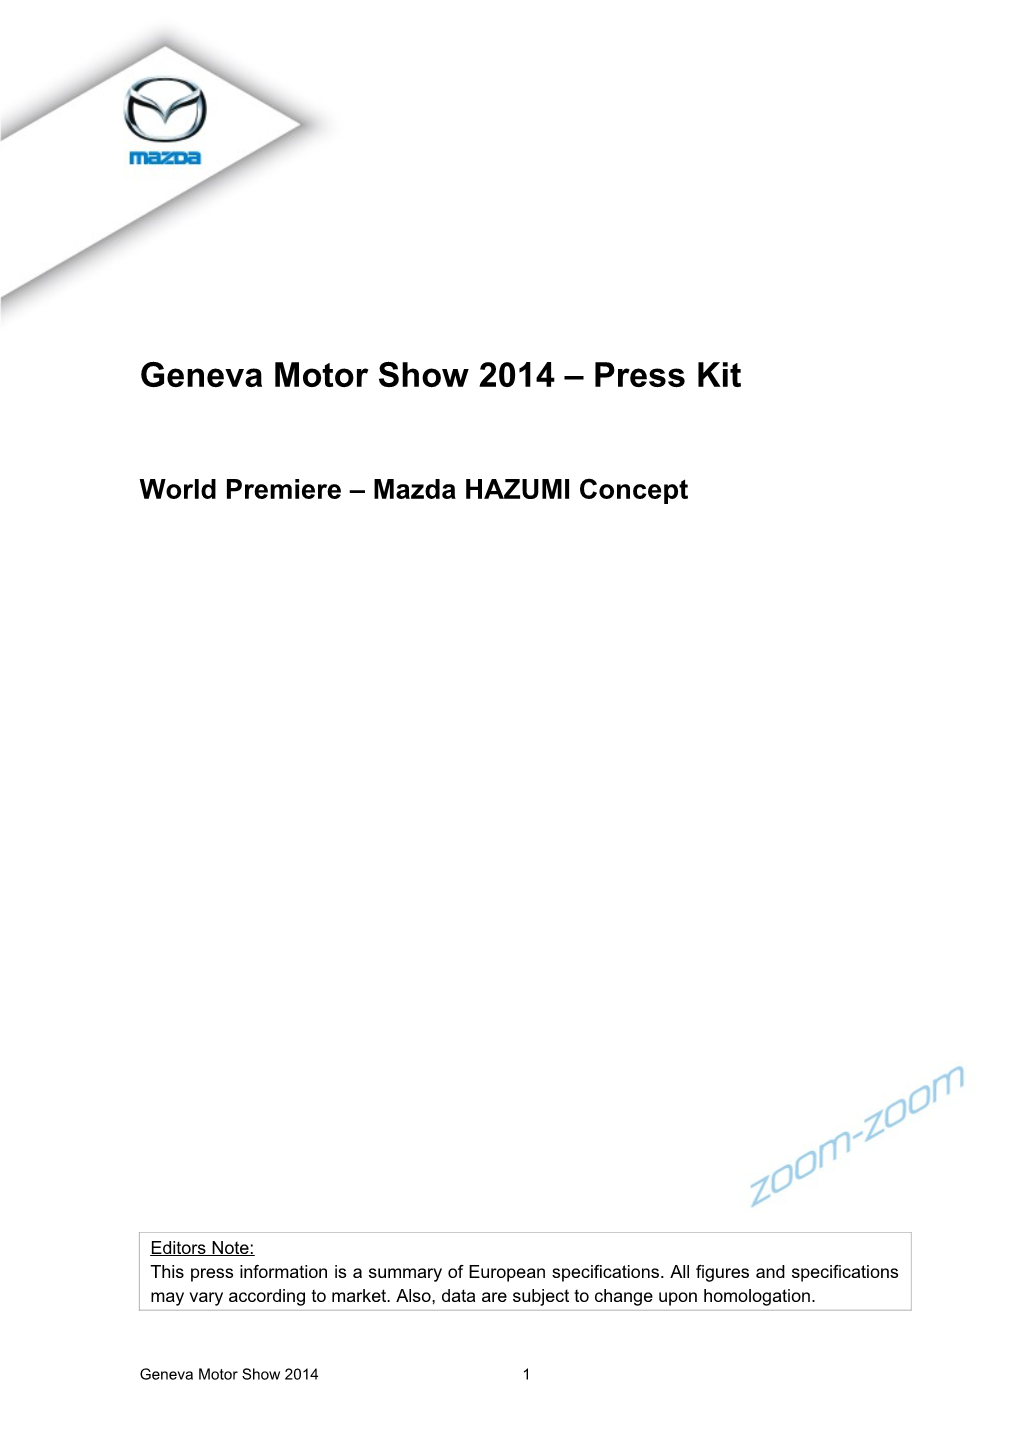 Geneva Motor Show 2014 Press Kit